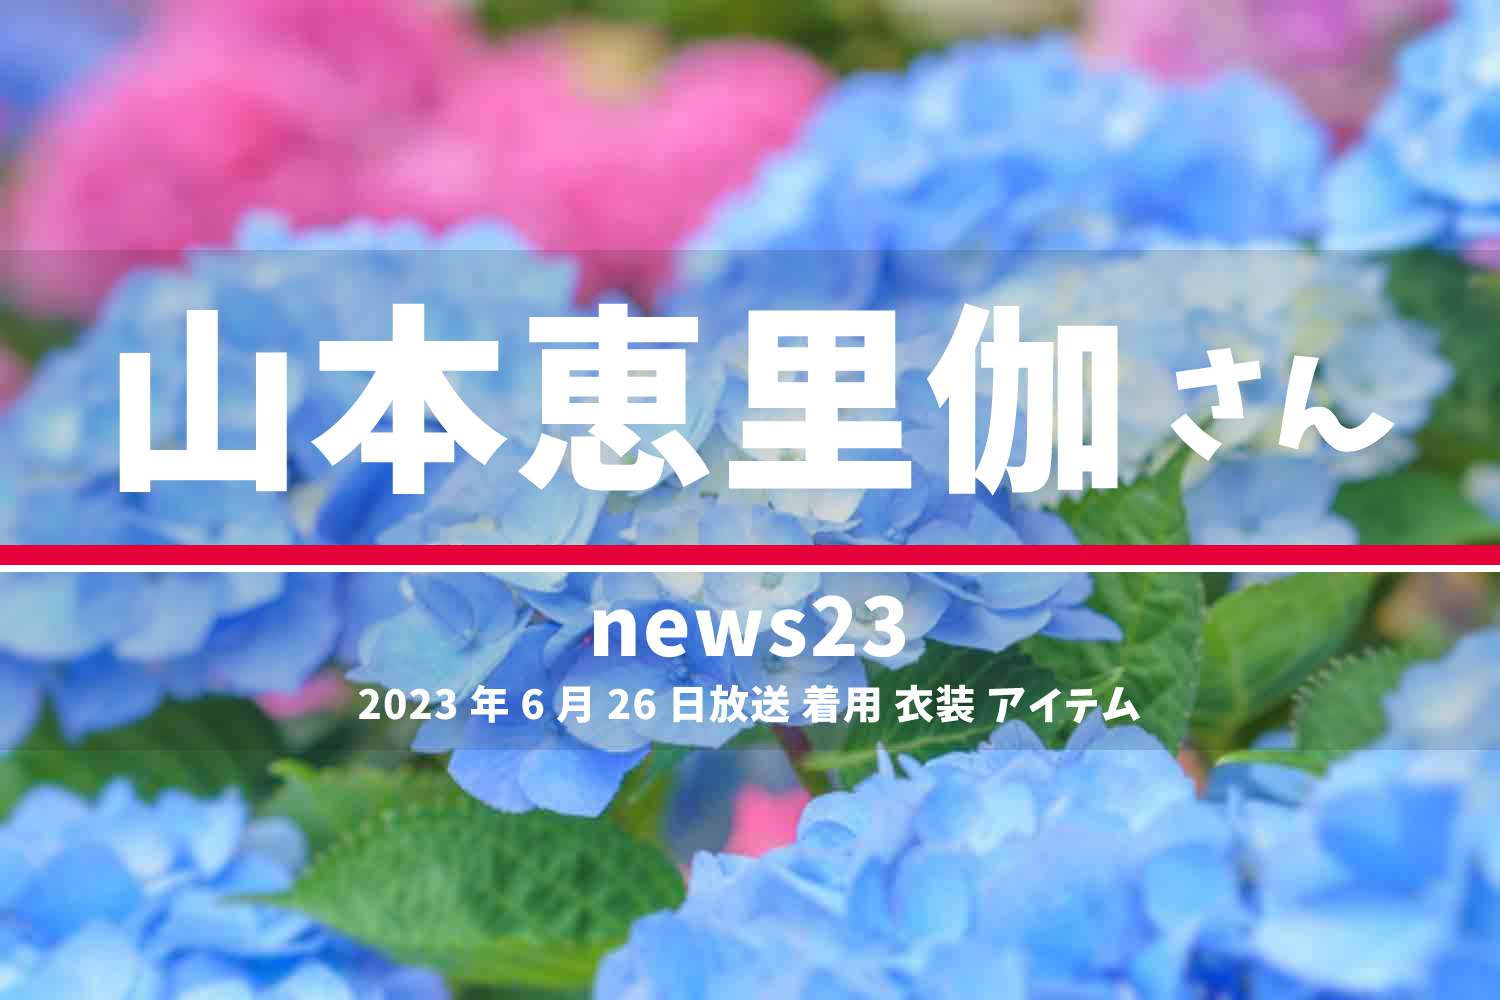 news23 山本恵里伽さん 番組 衣装 2023年6月26日放送